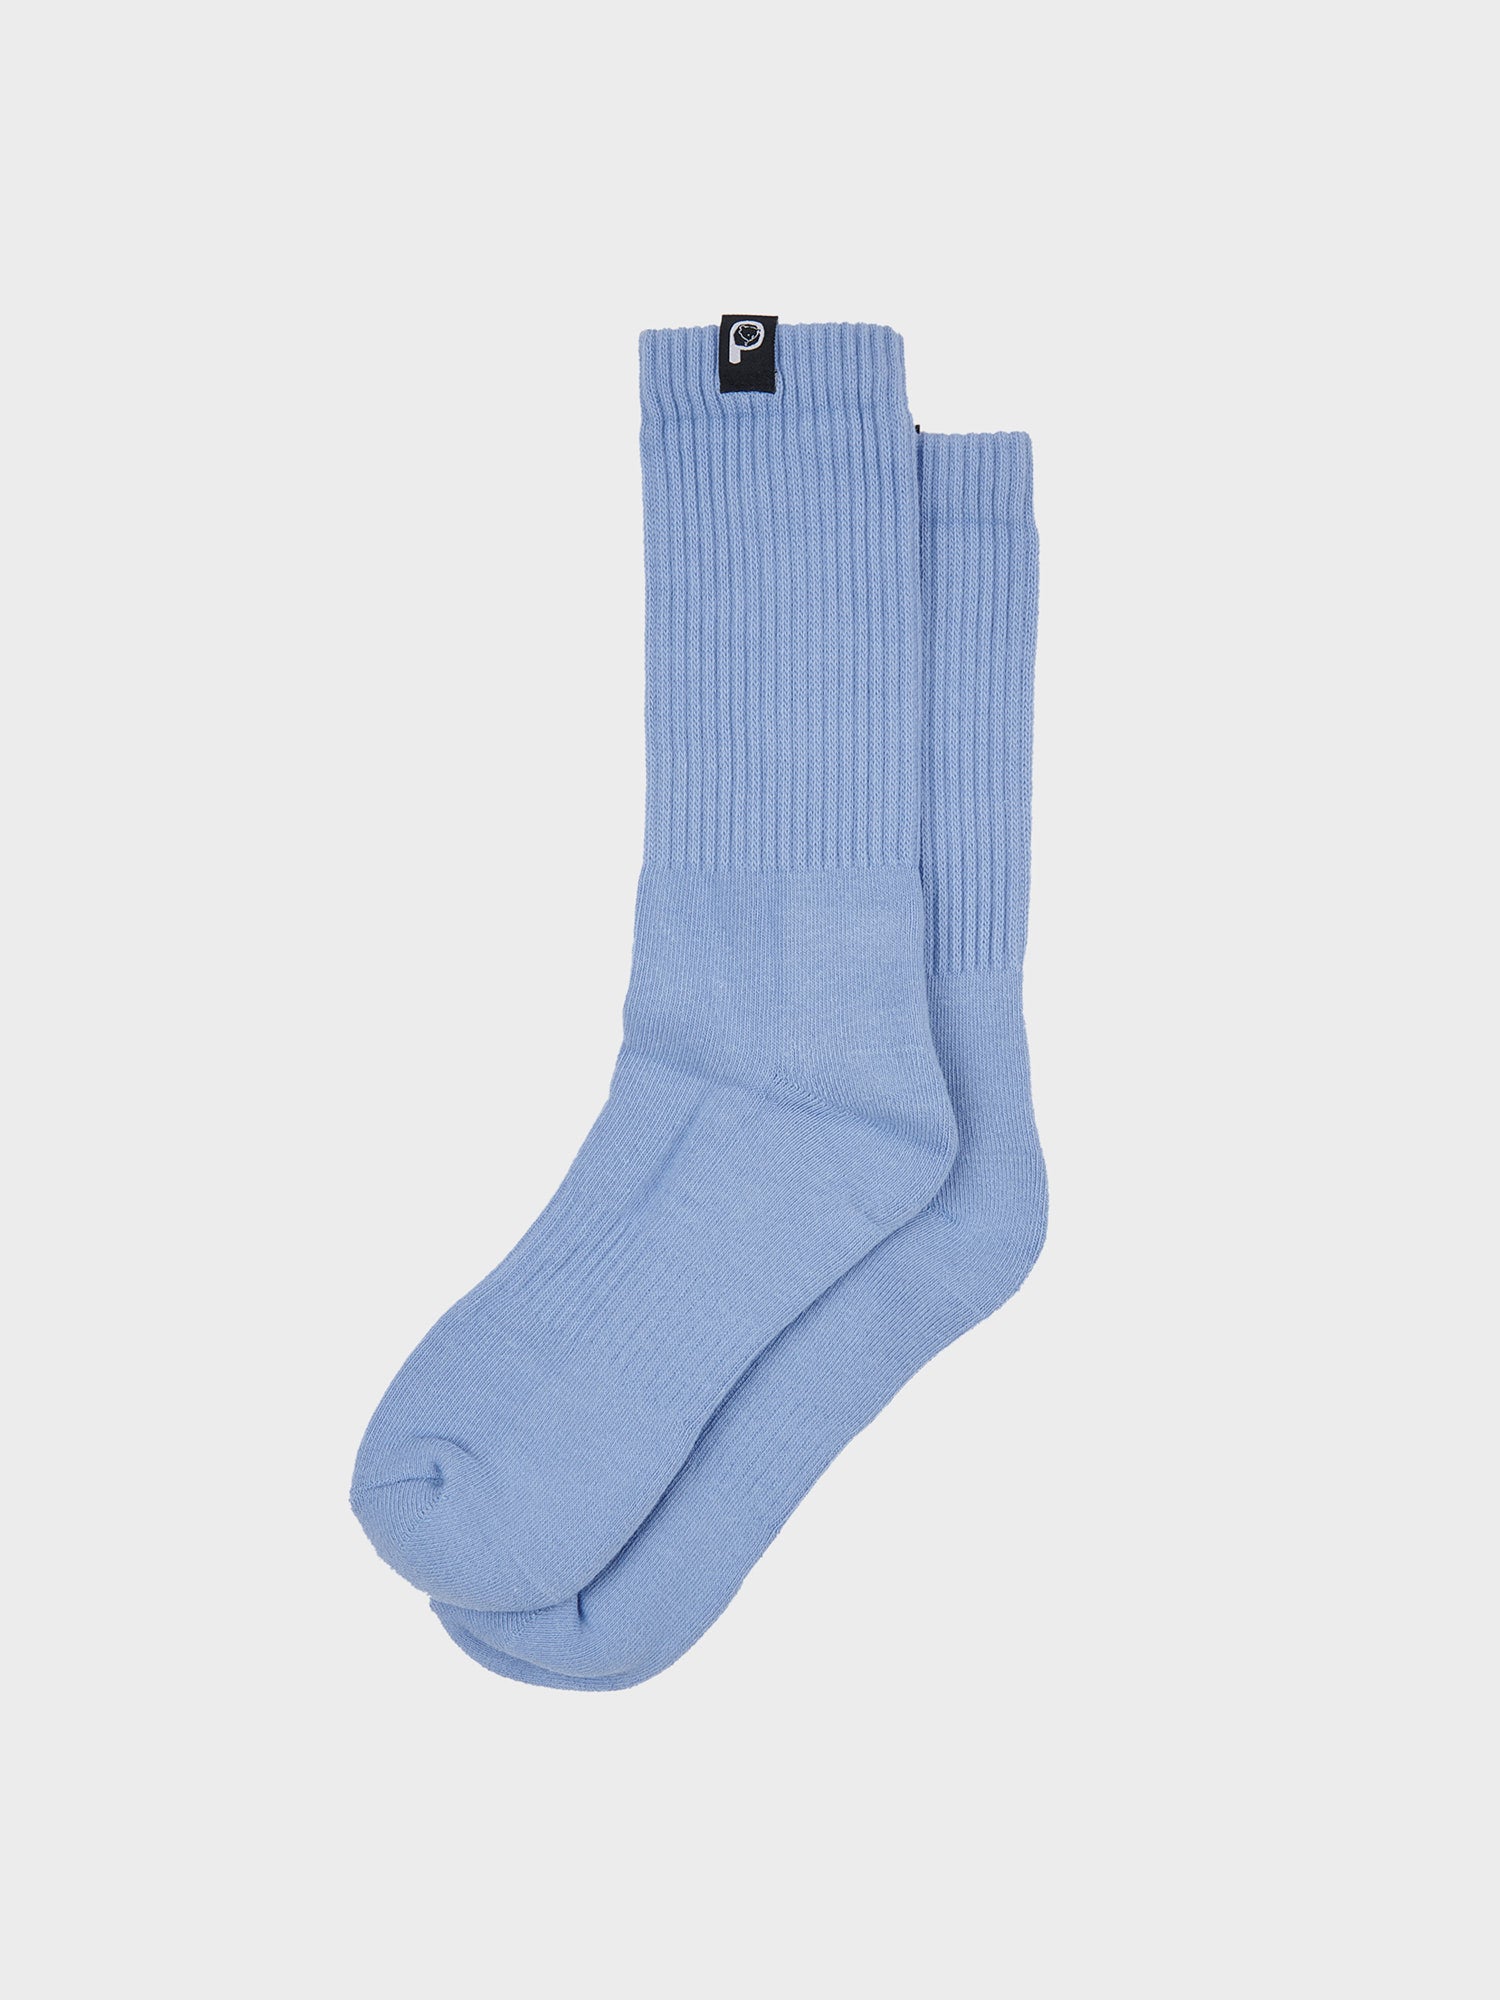 2 Pack Socks in Eventide